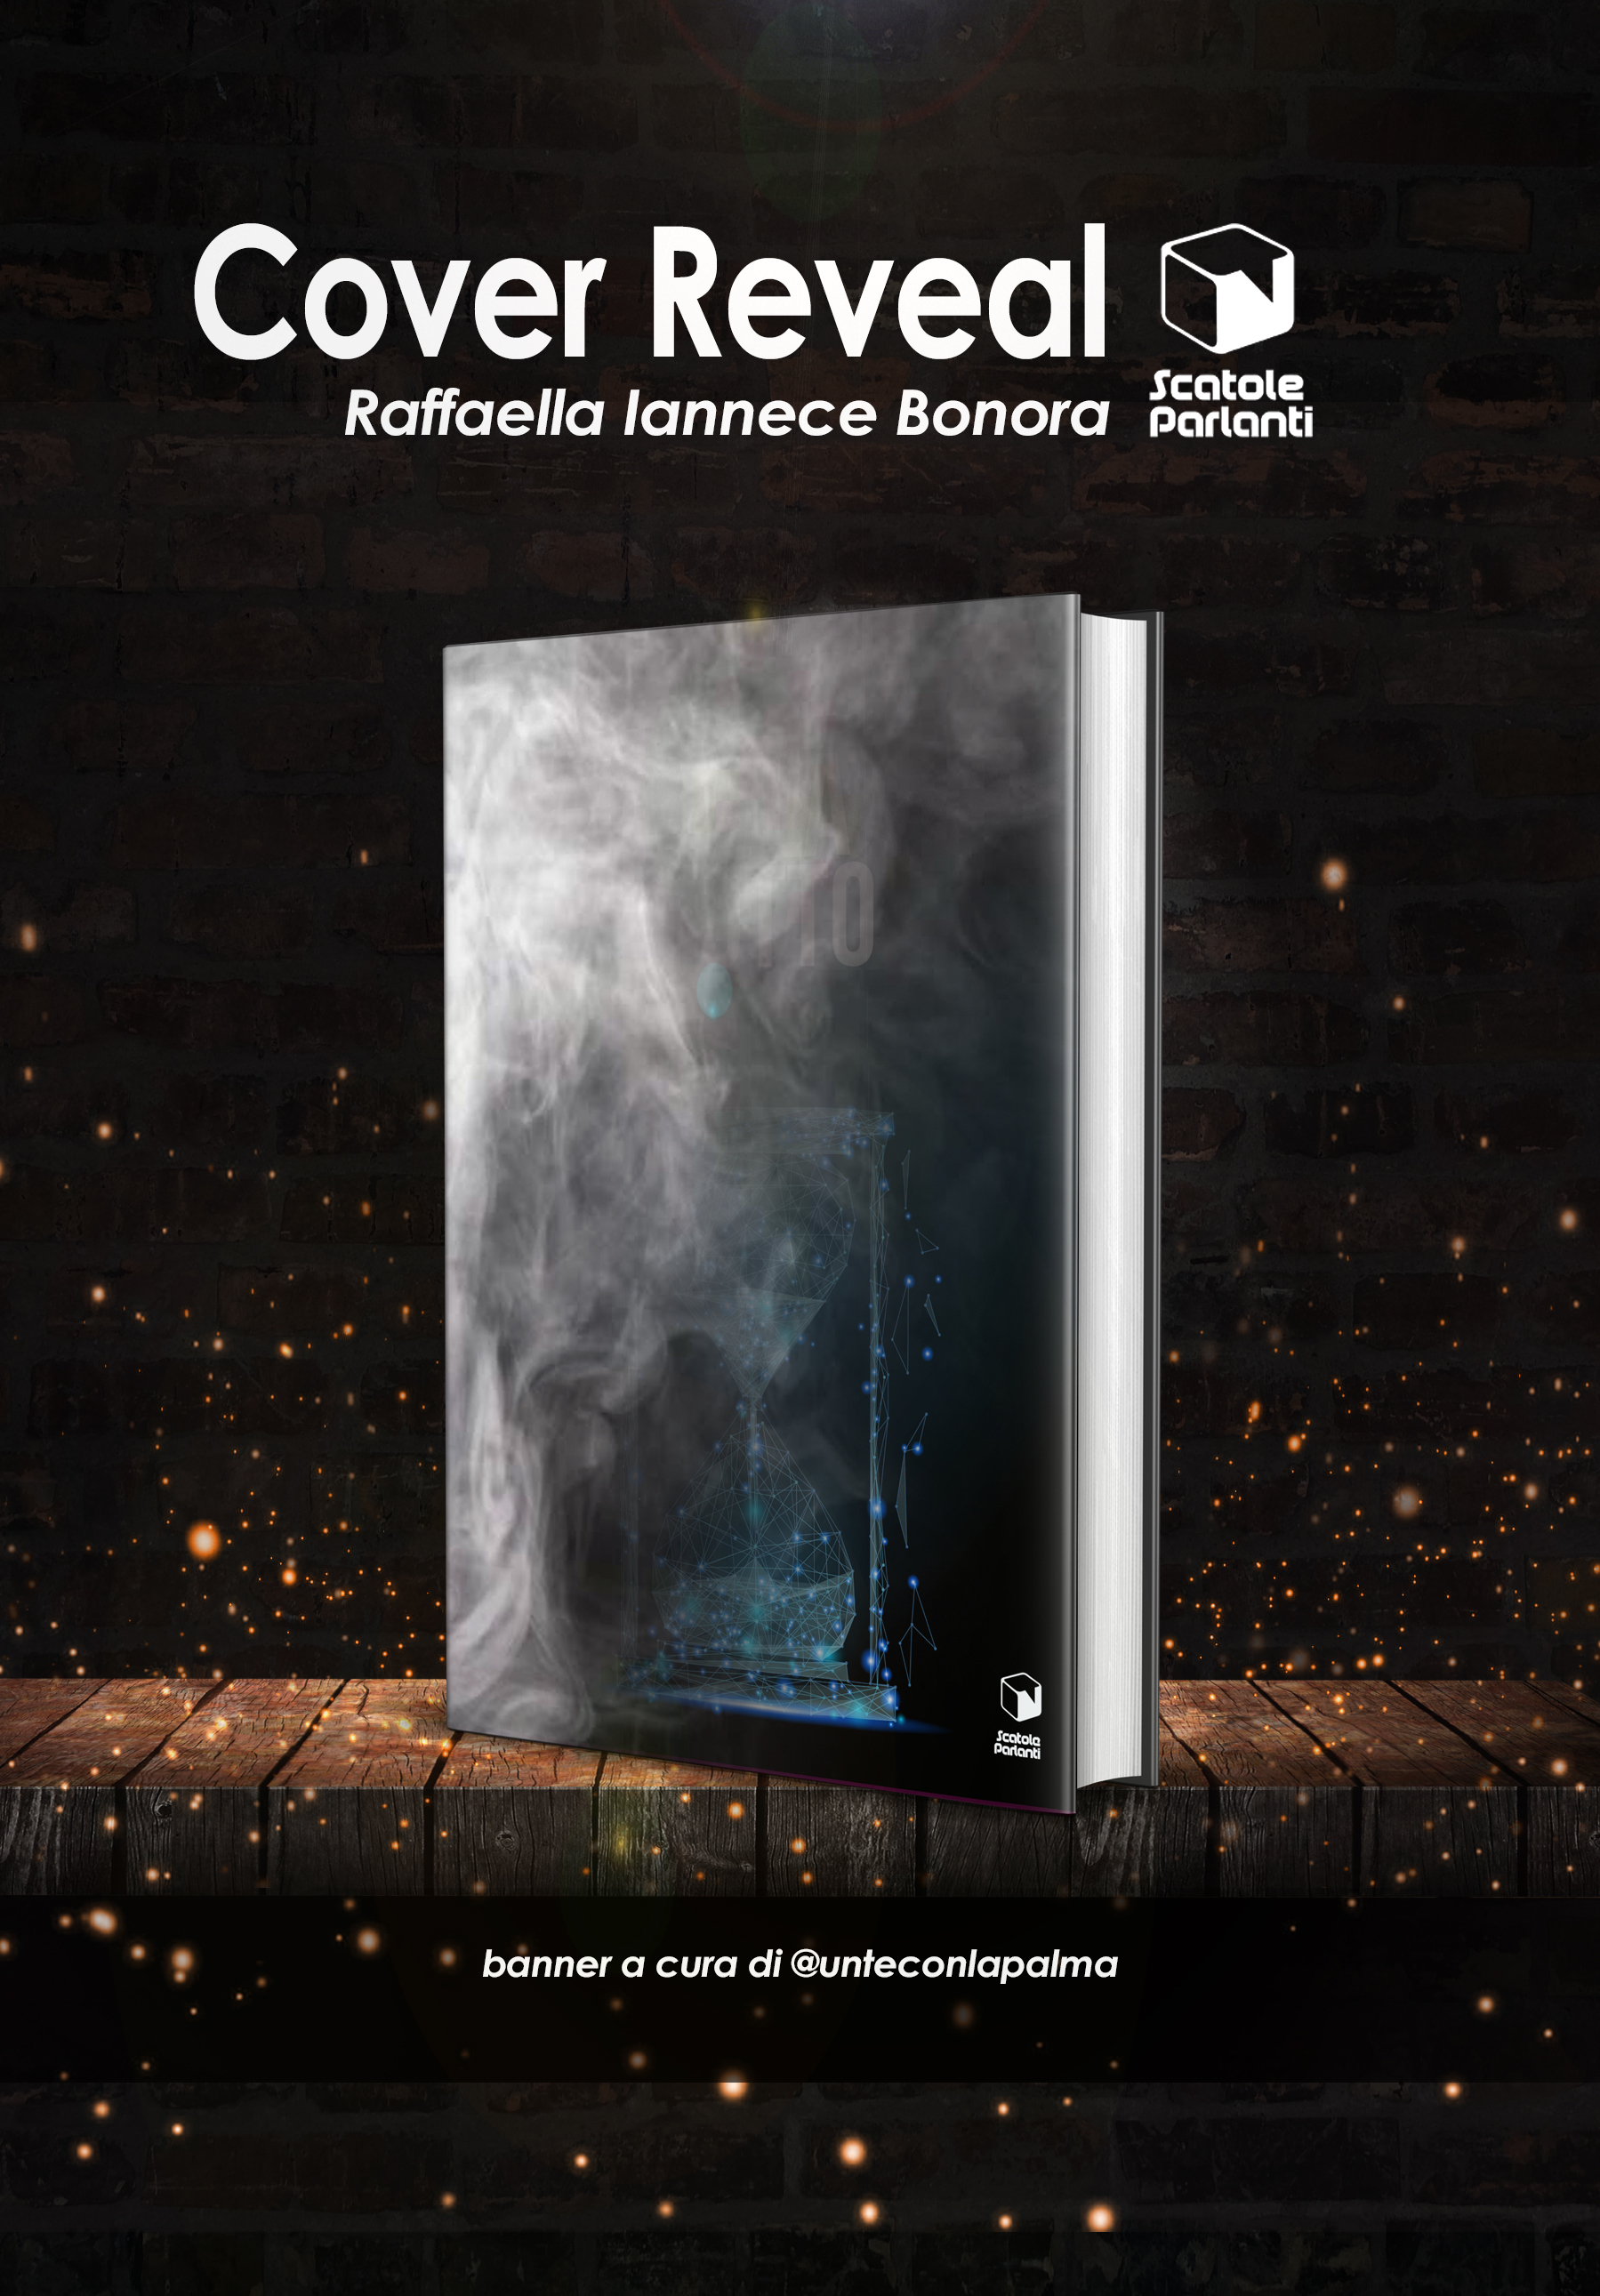 Cover Reveal “La Tavola degli Otto” di Raffaella Iannece Bonora 